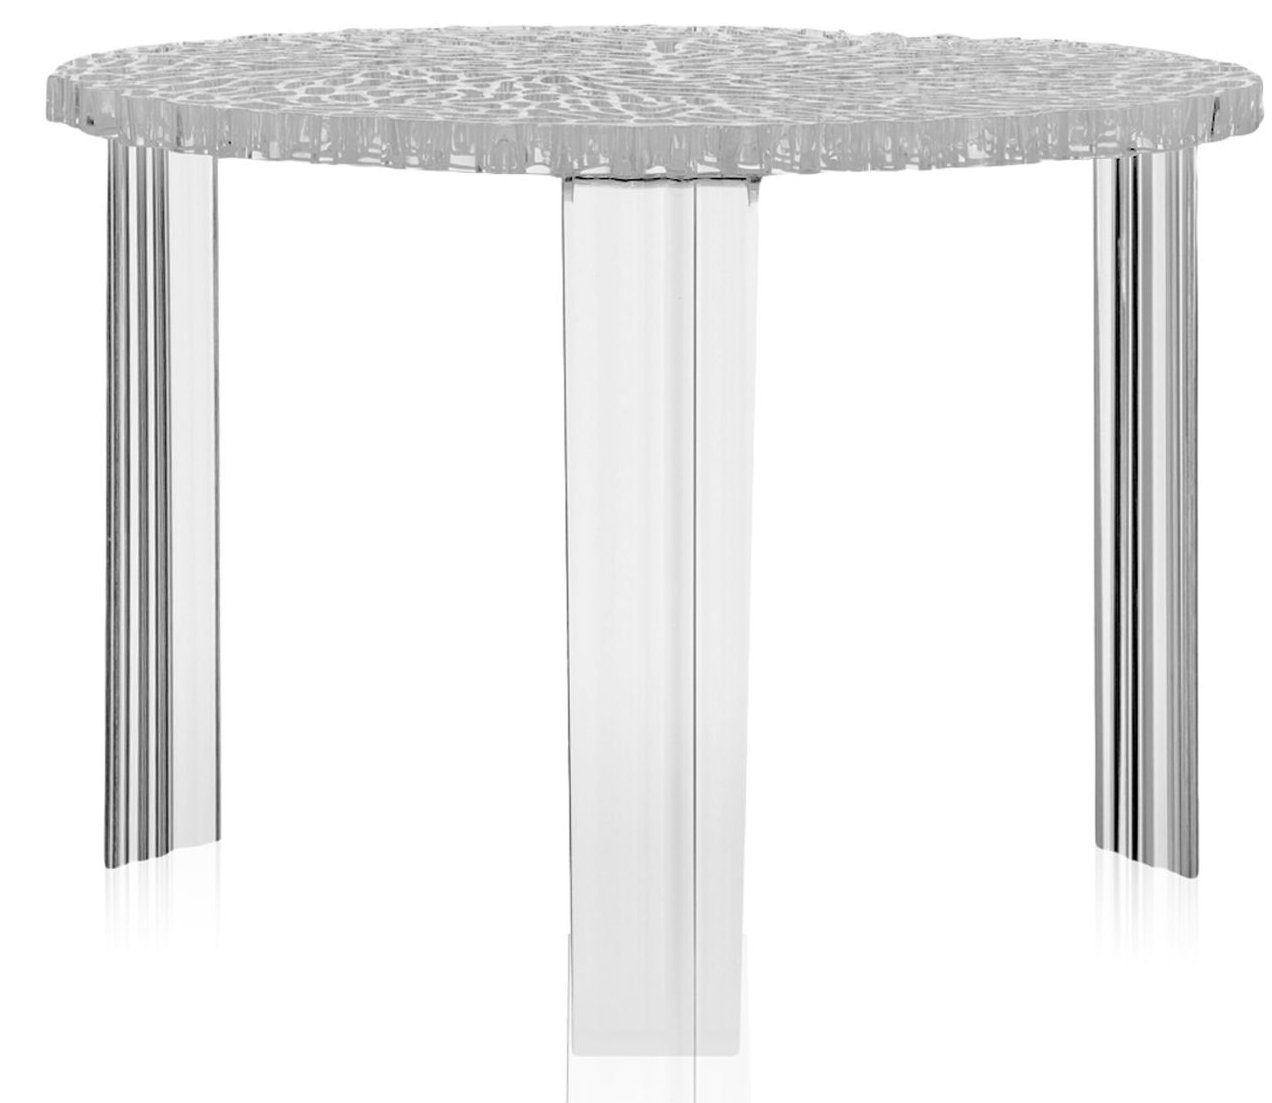 Masuta Kartell T-Table design Patricia Urquiola 50cm h 36cm transparent 36cm